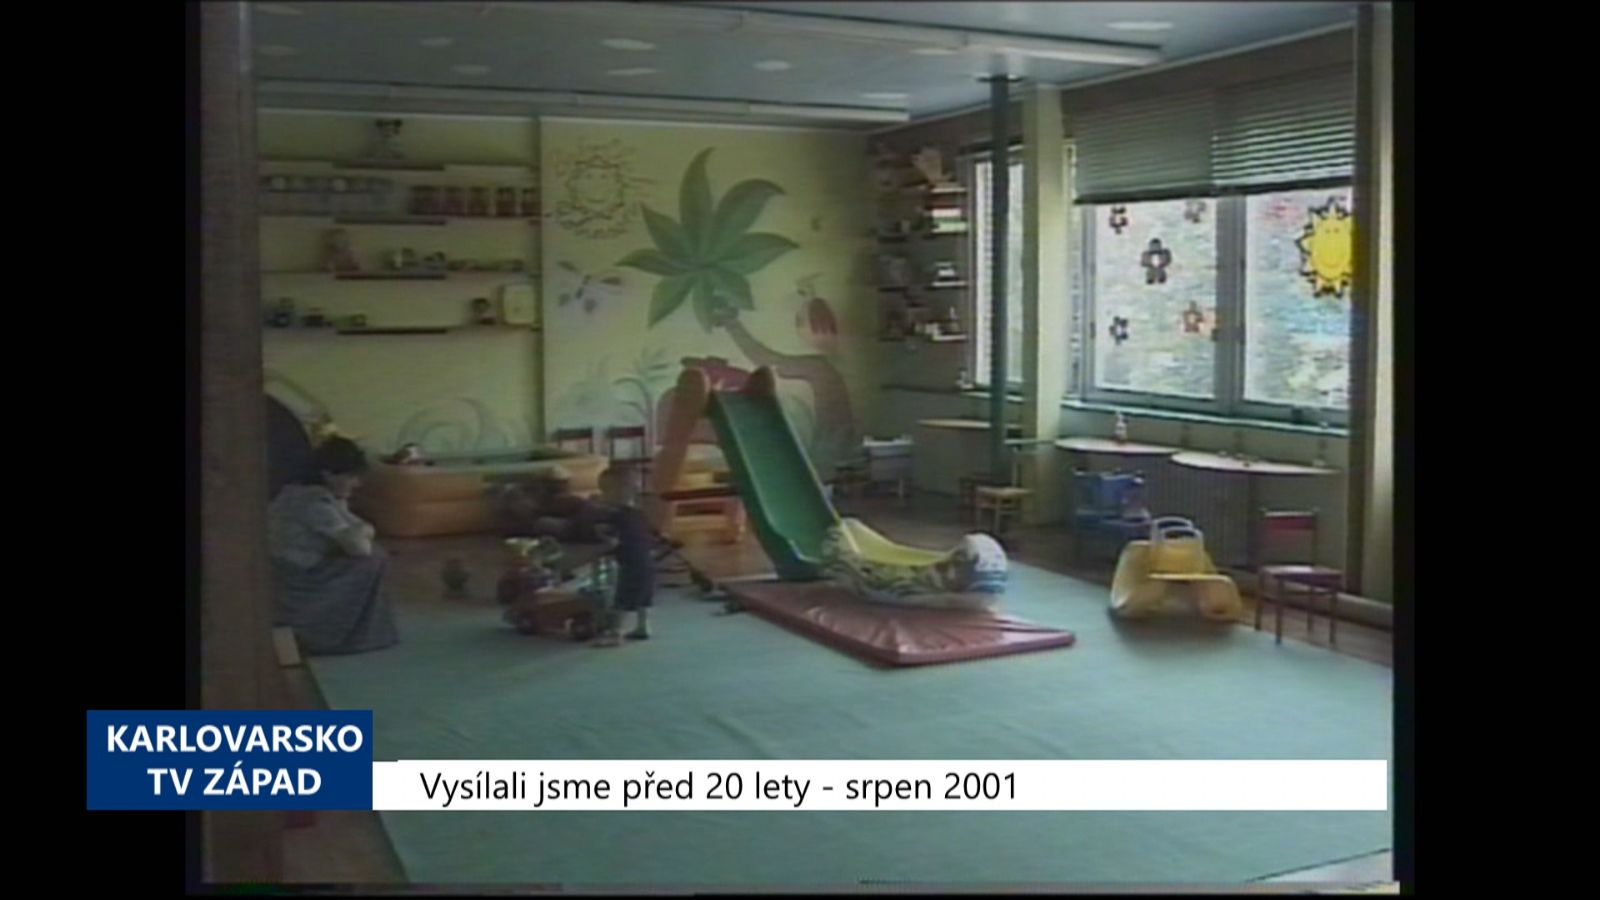 2001 – Sokolov: Mateřské centrum zahájilo svou činnost (TV Západ)